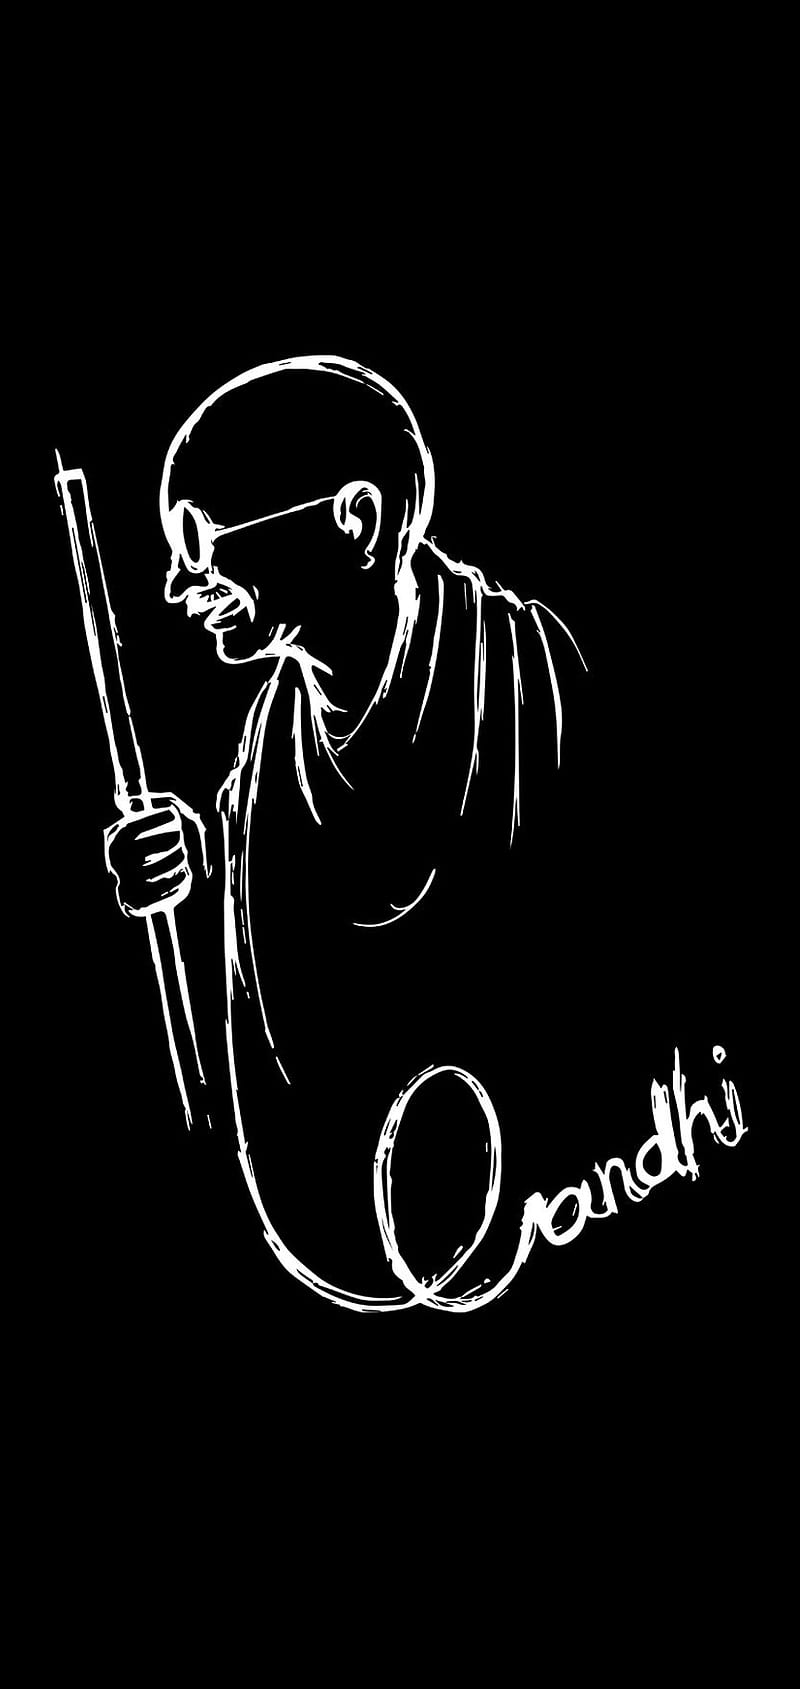 Gandhi bapu, bapu, gandhi, gandhiji, HD phone wallpaper | Peakpx